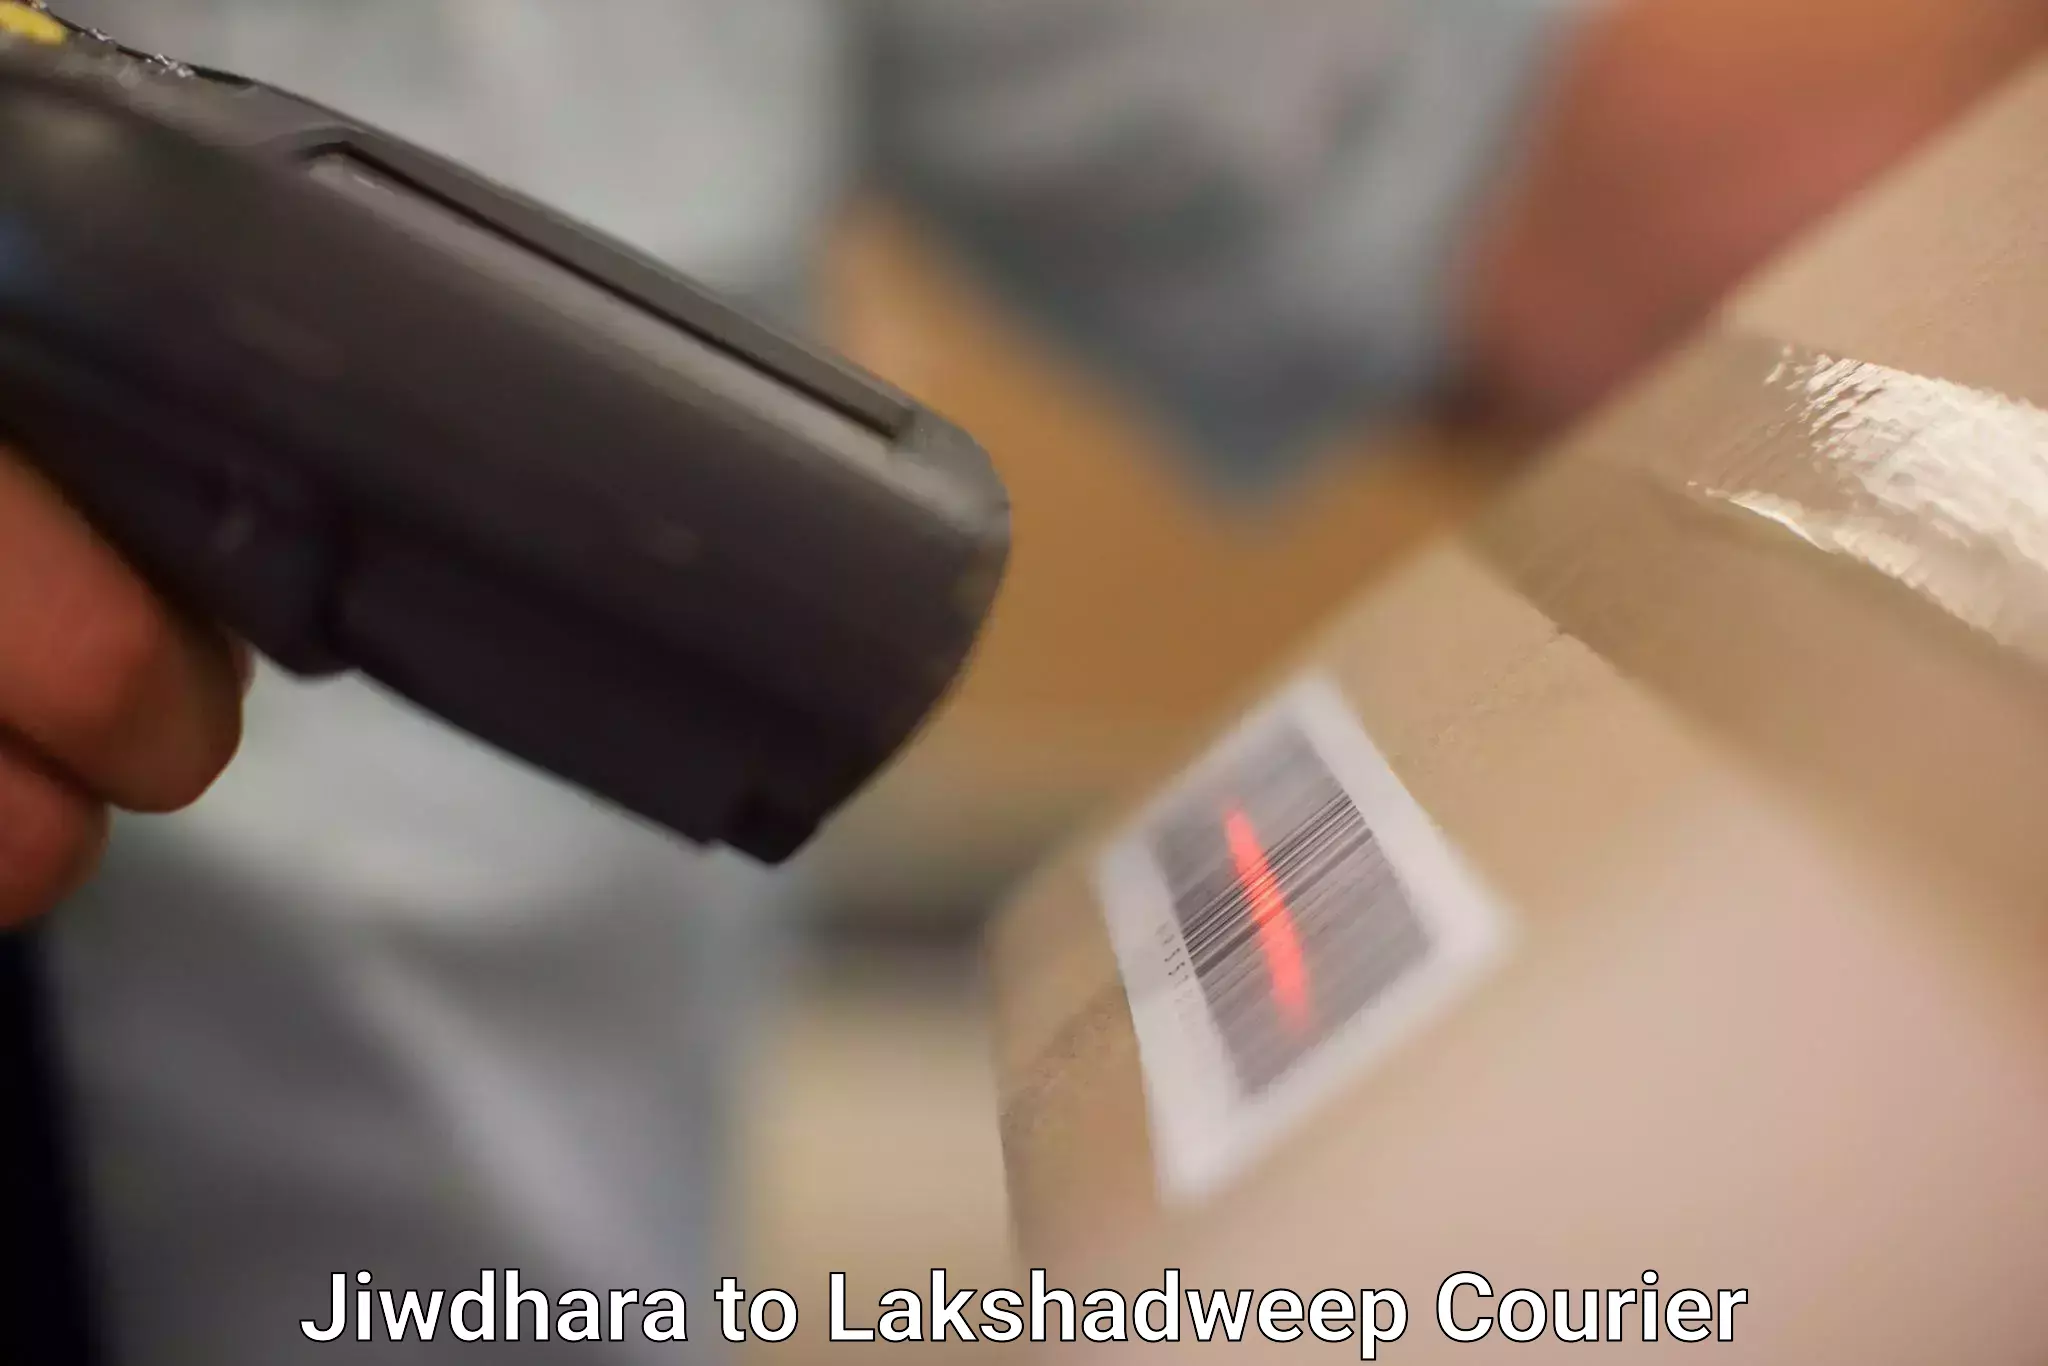 Global courier networks Jiwdhara to Lakshadweep